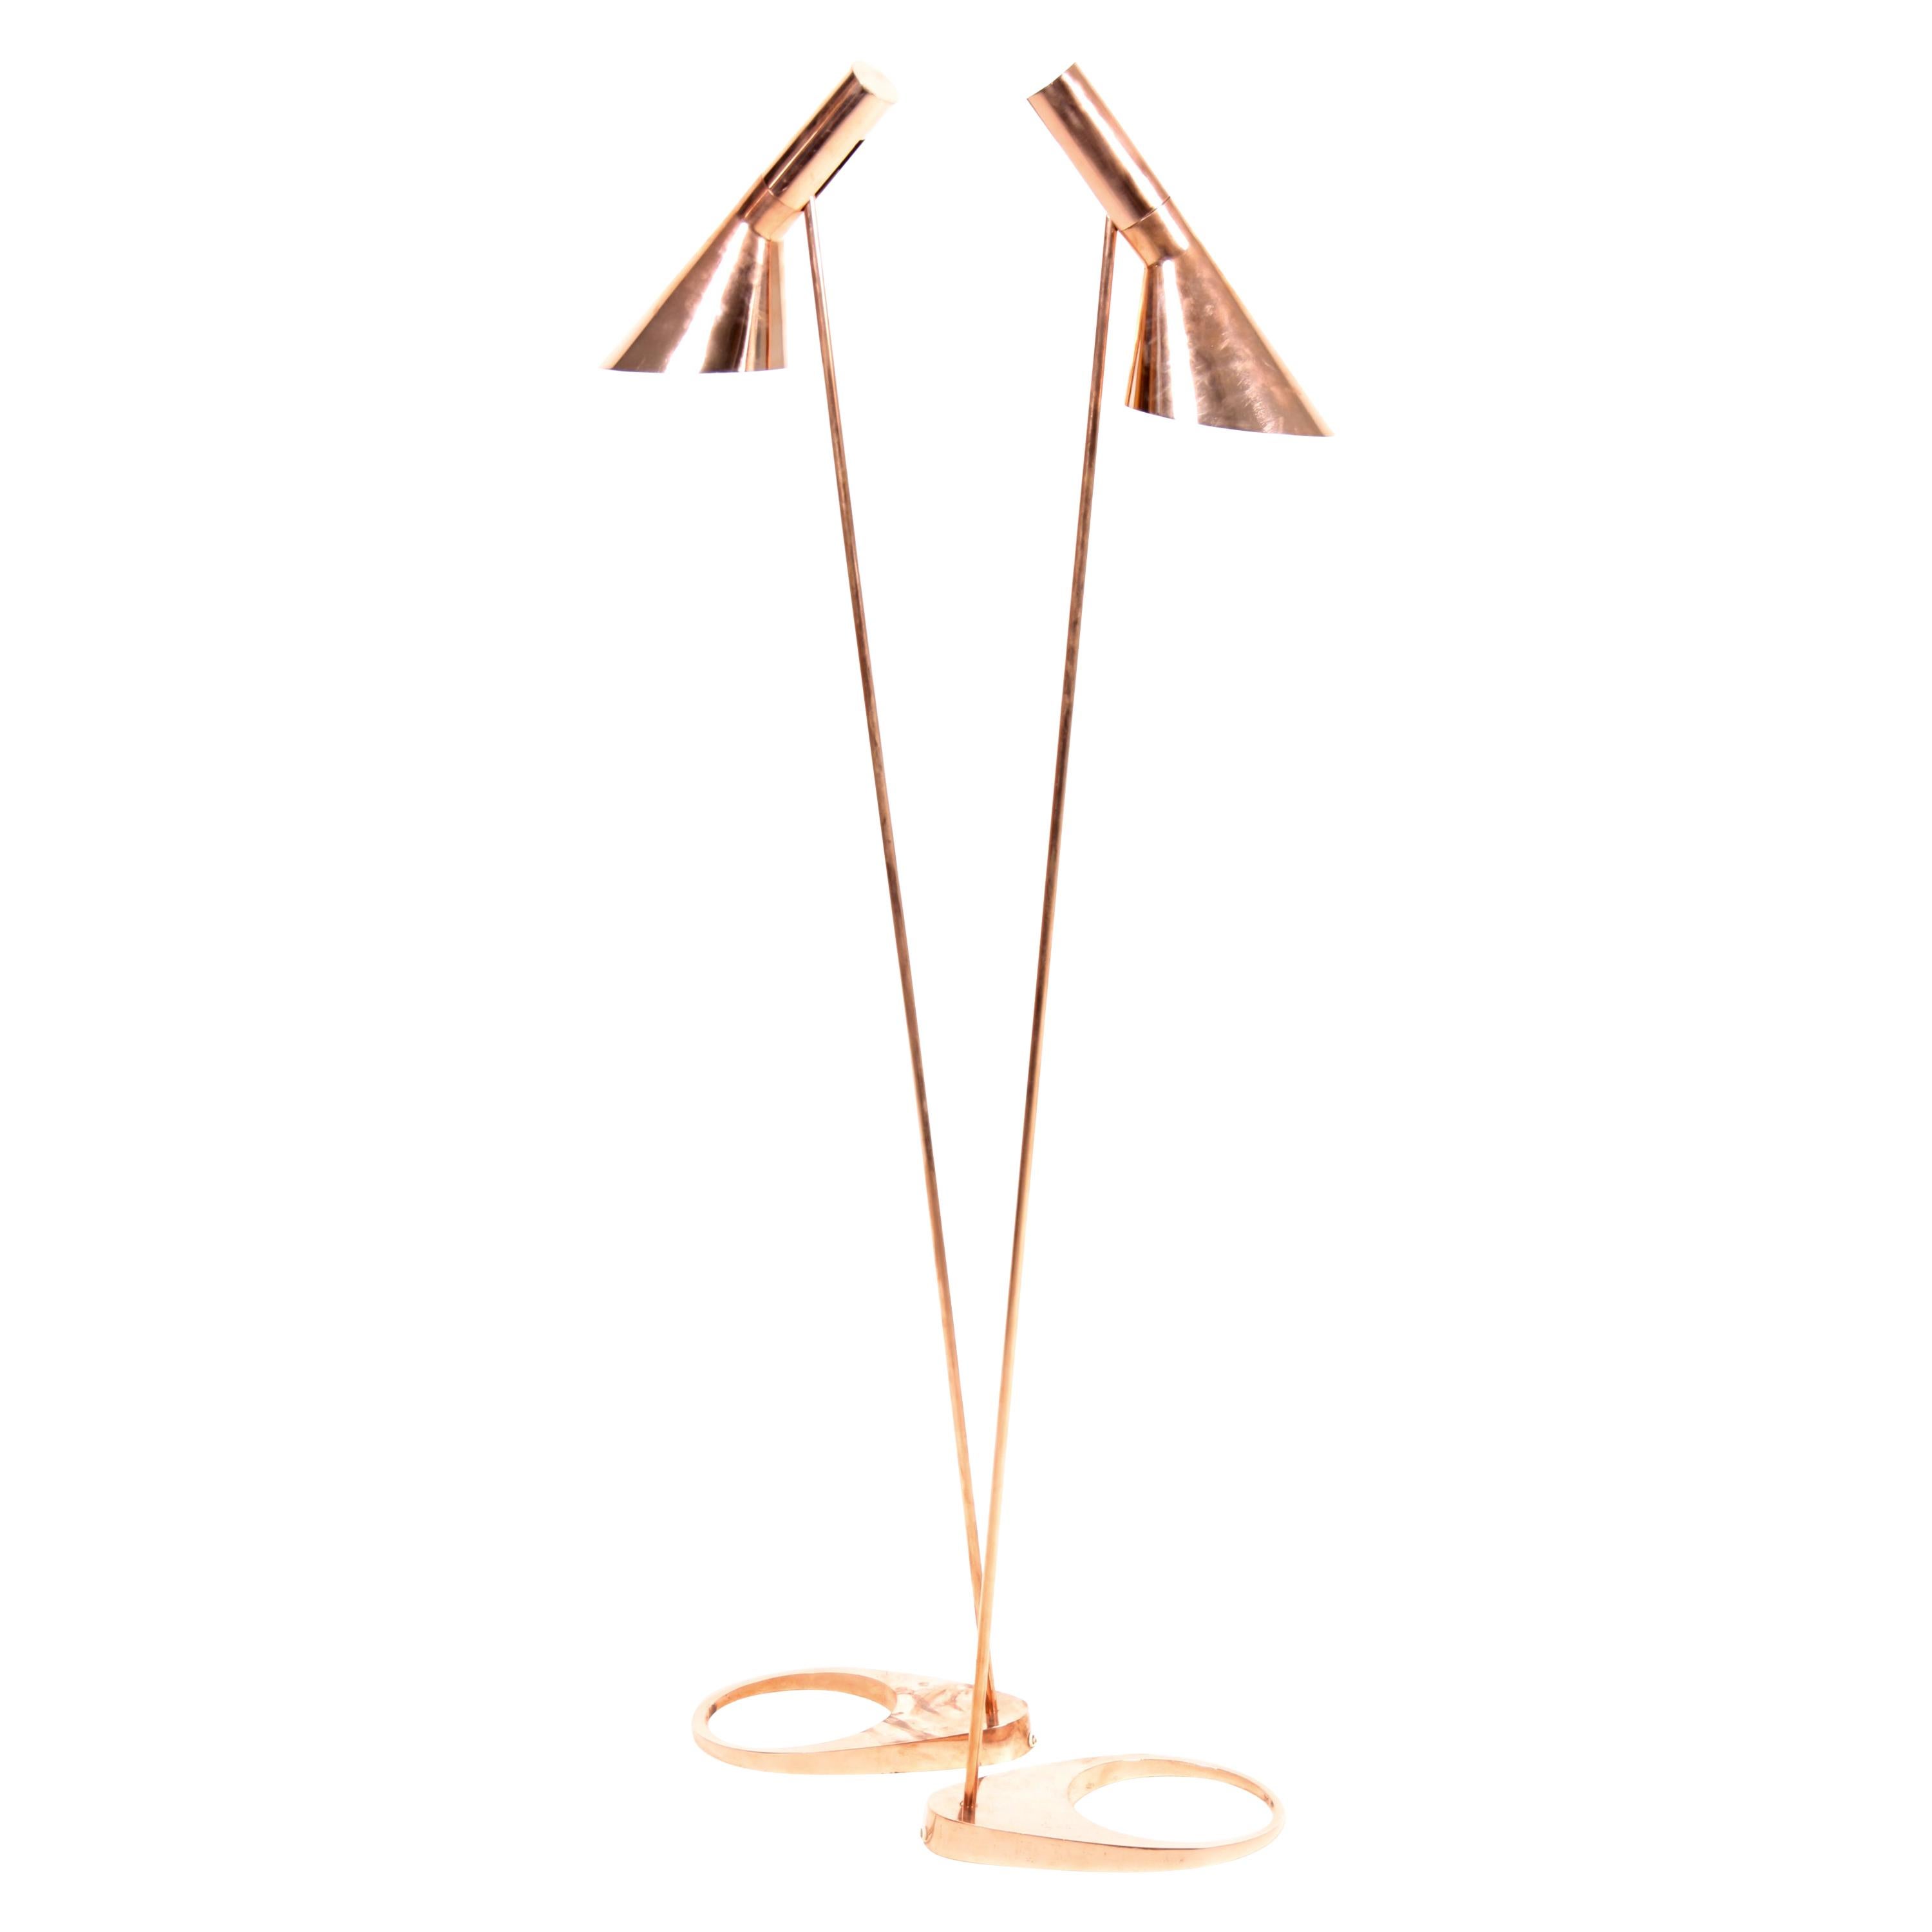 Pair of Floor Lamps in Copper by Arne Jacobsen, Scandinavian Modern, 1960s